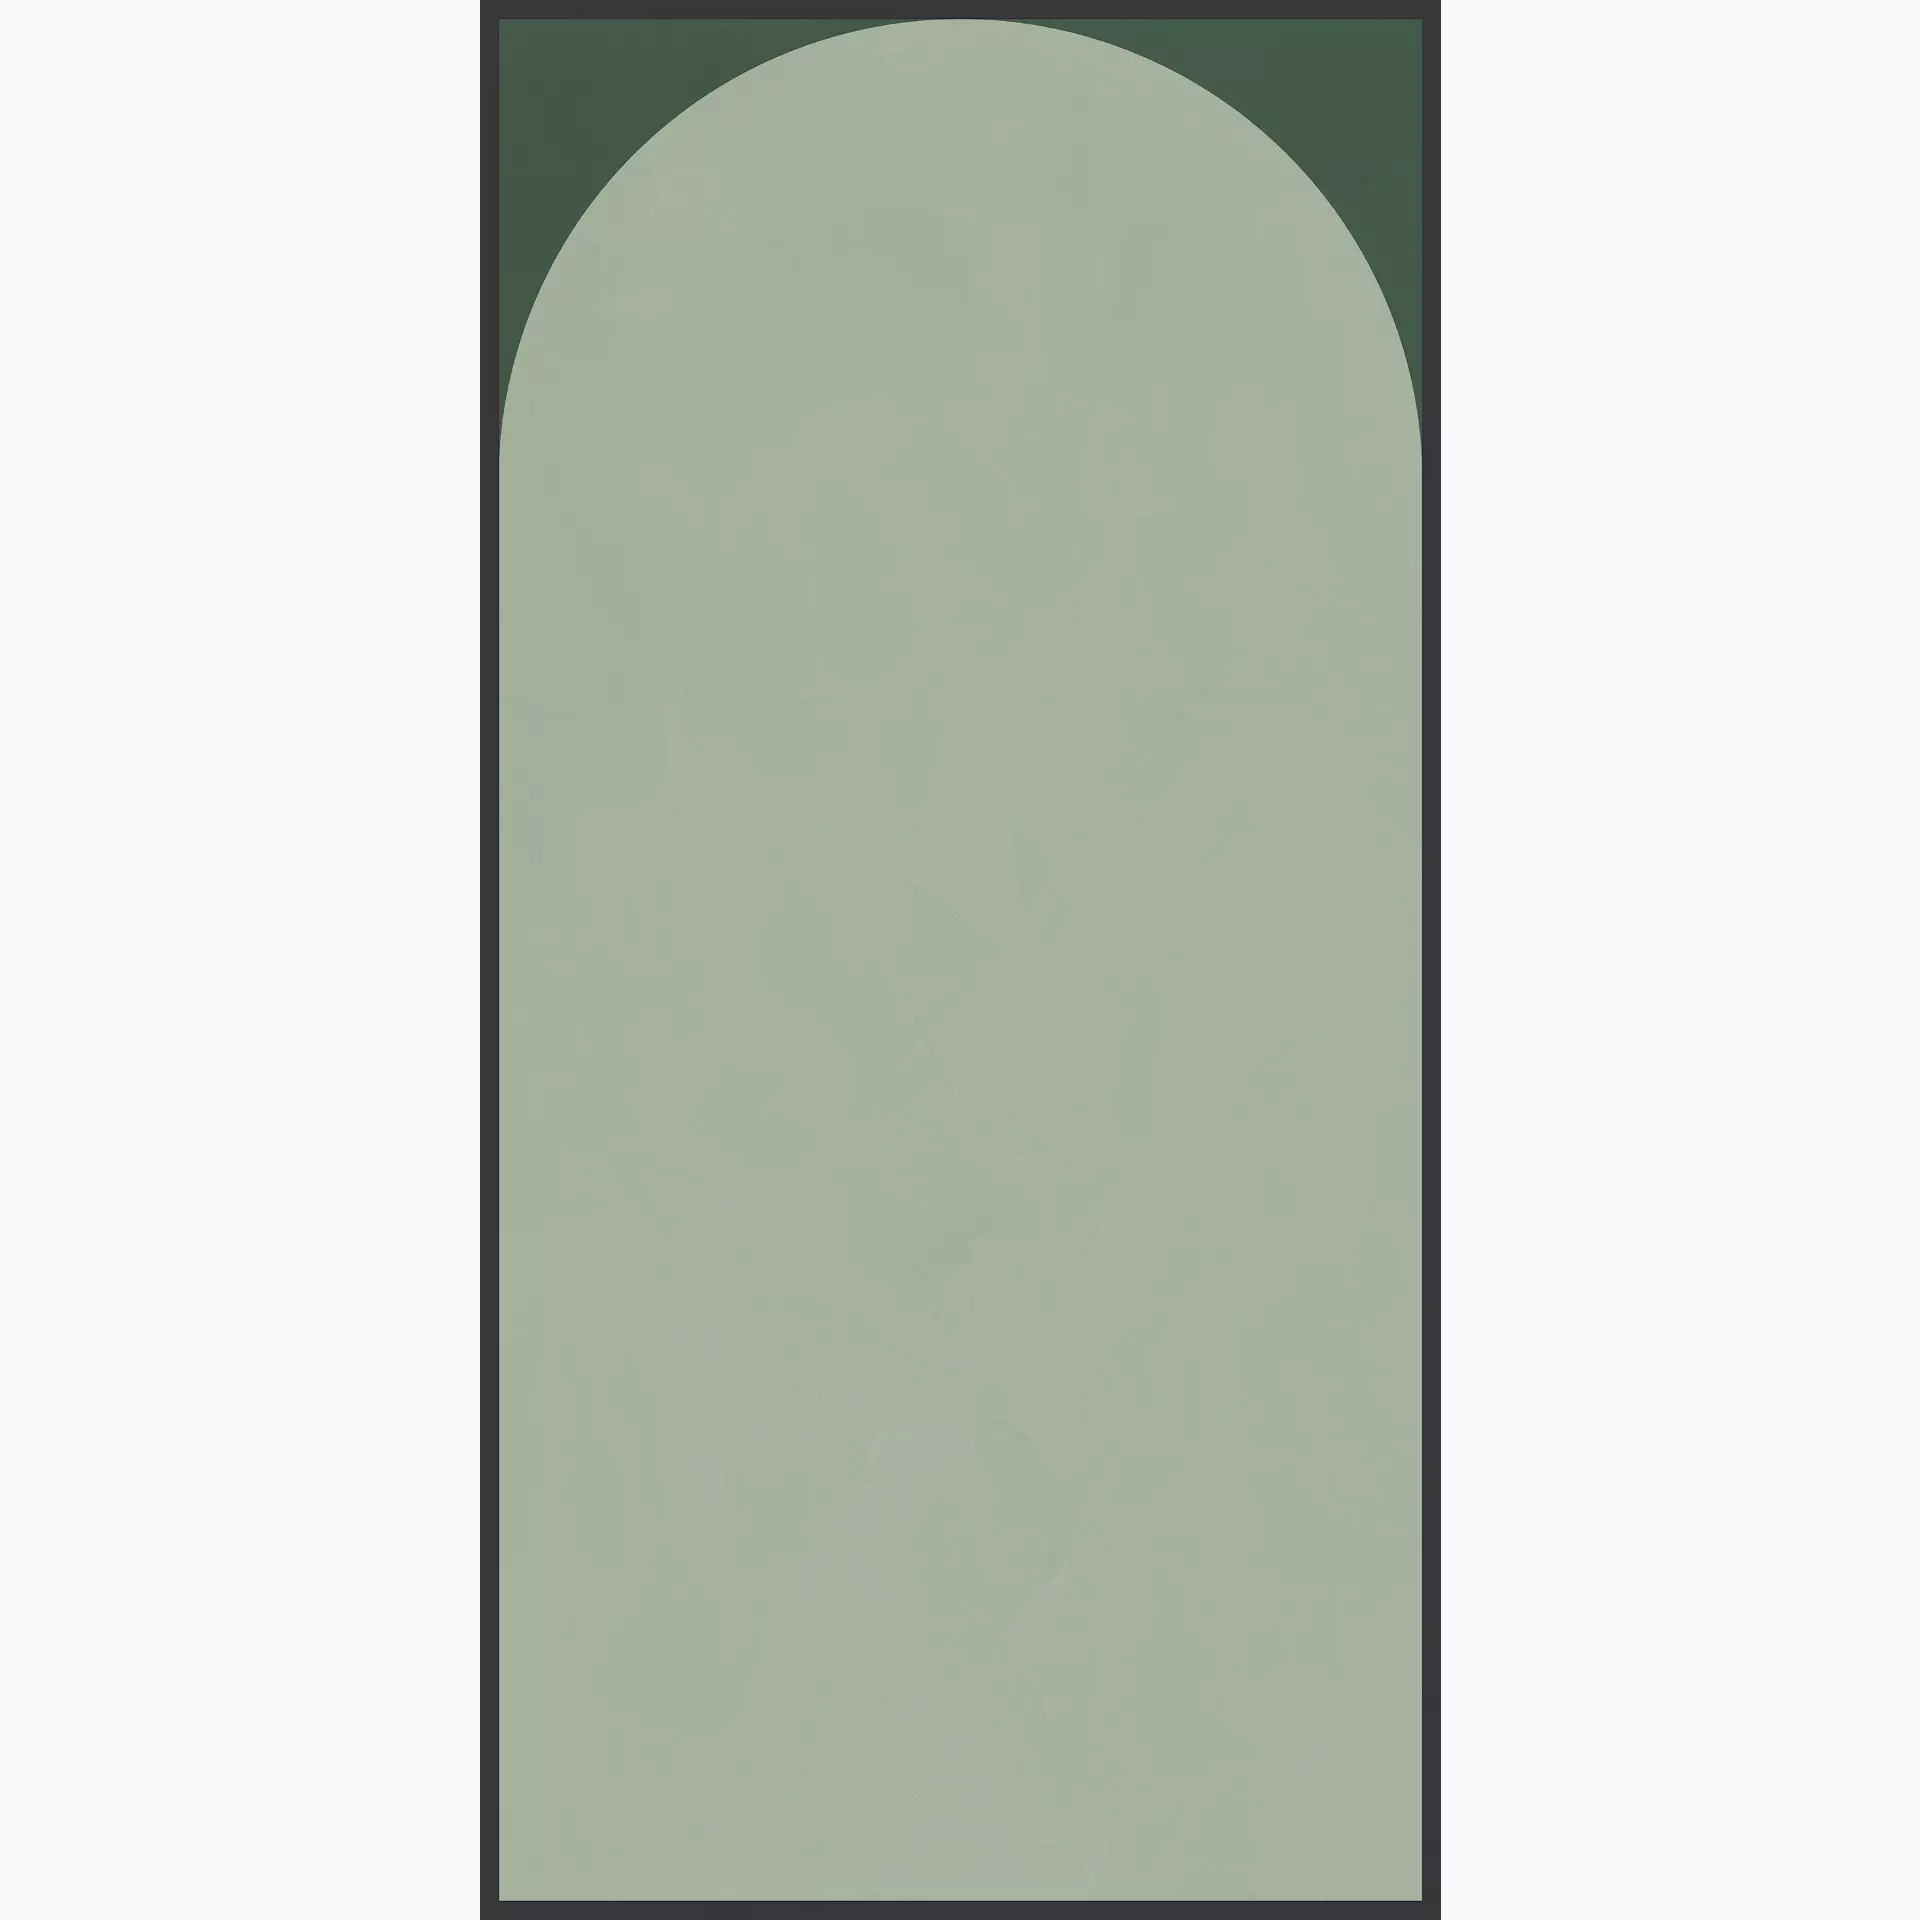 Cedit Policroma Lichene – Conifera Naturale – Matt Decor Arco 764112 120x240cm rectified 6mm